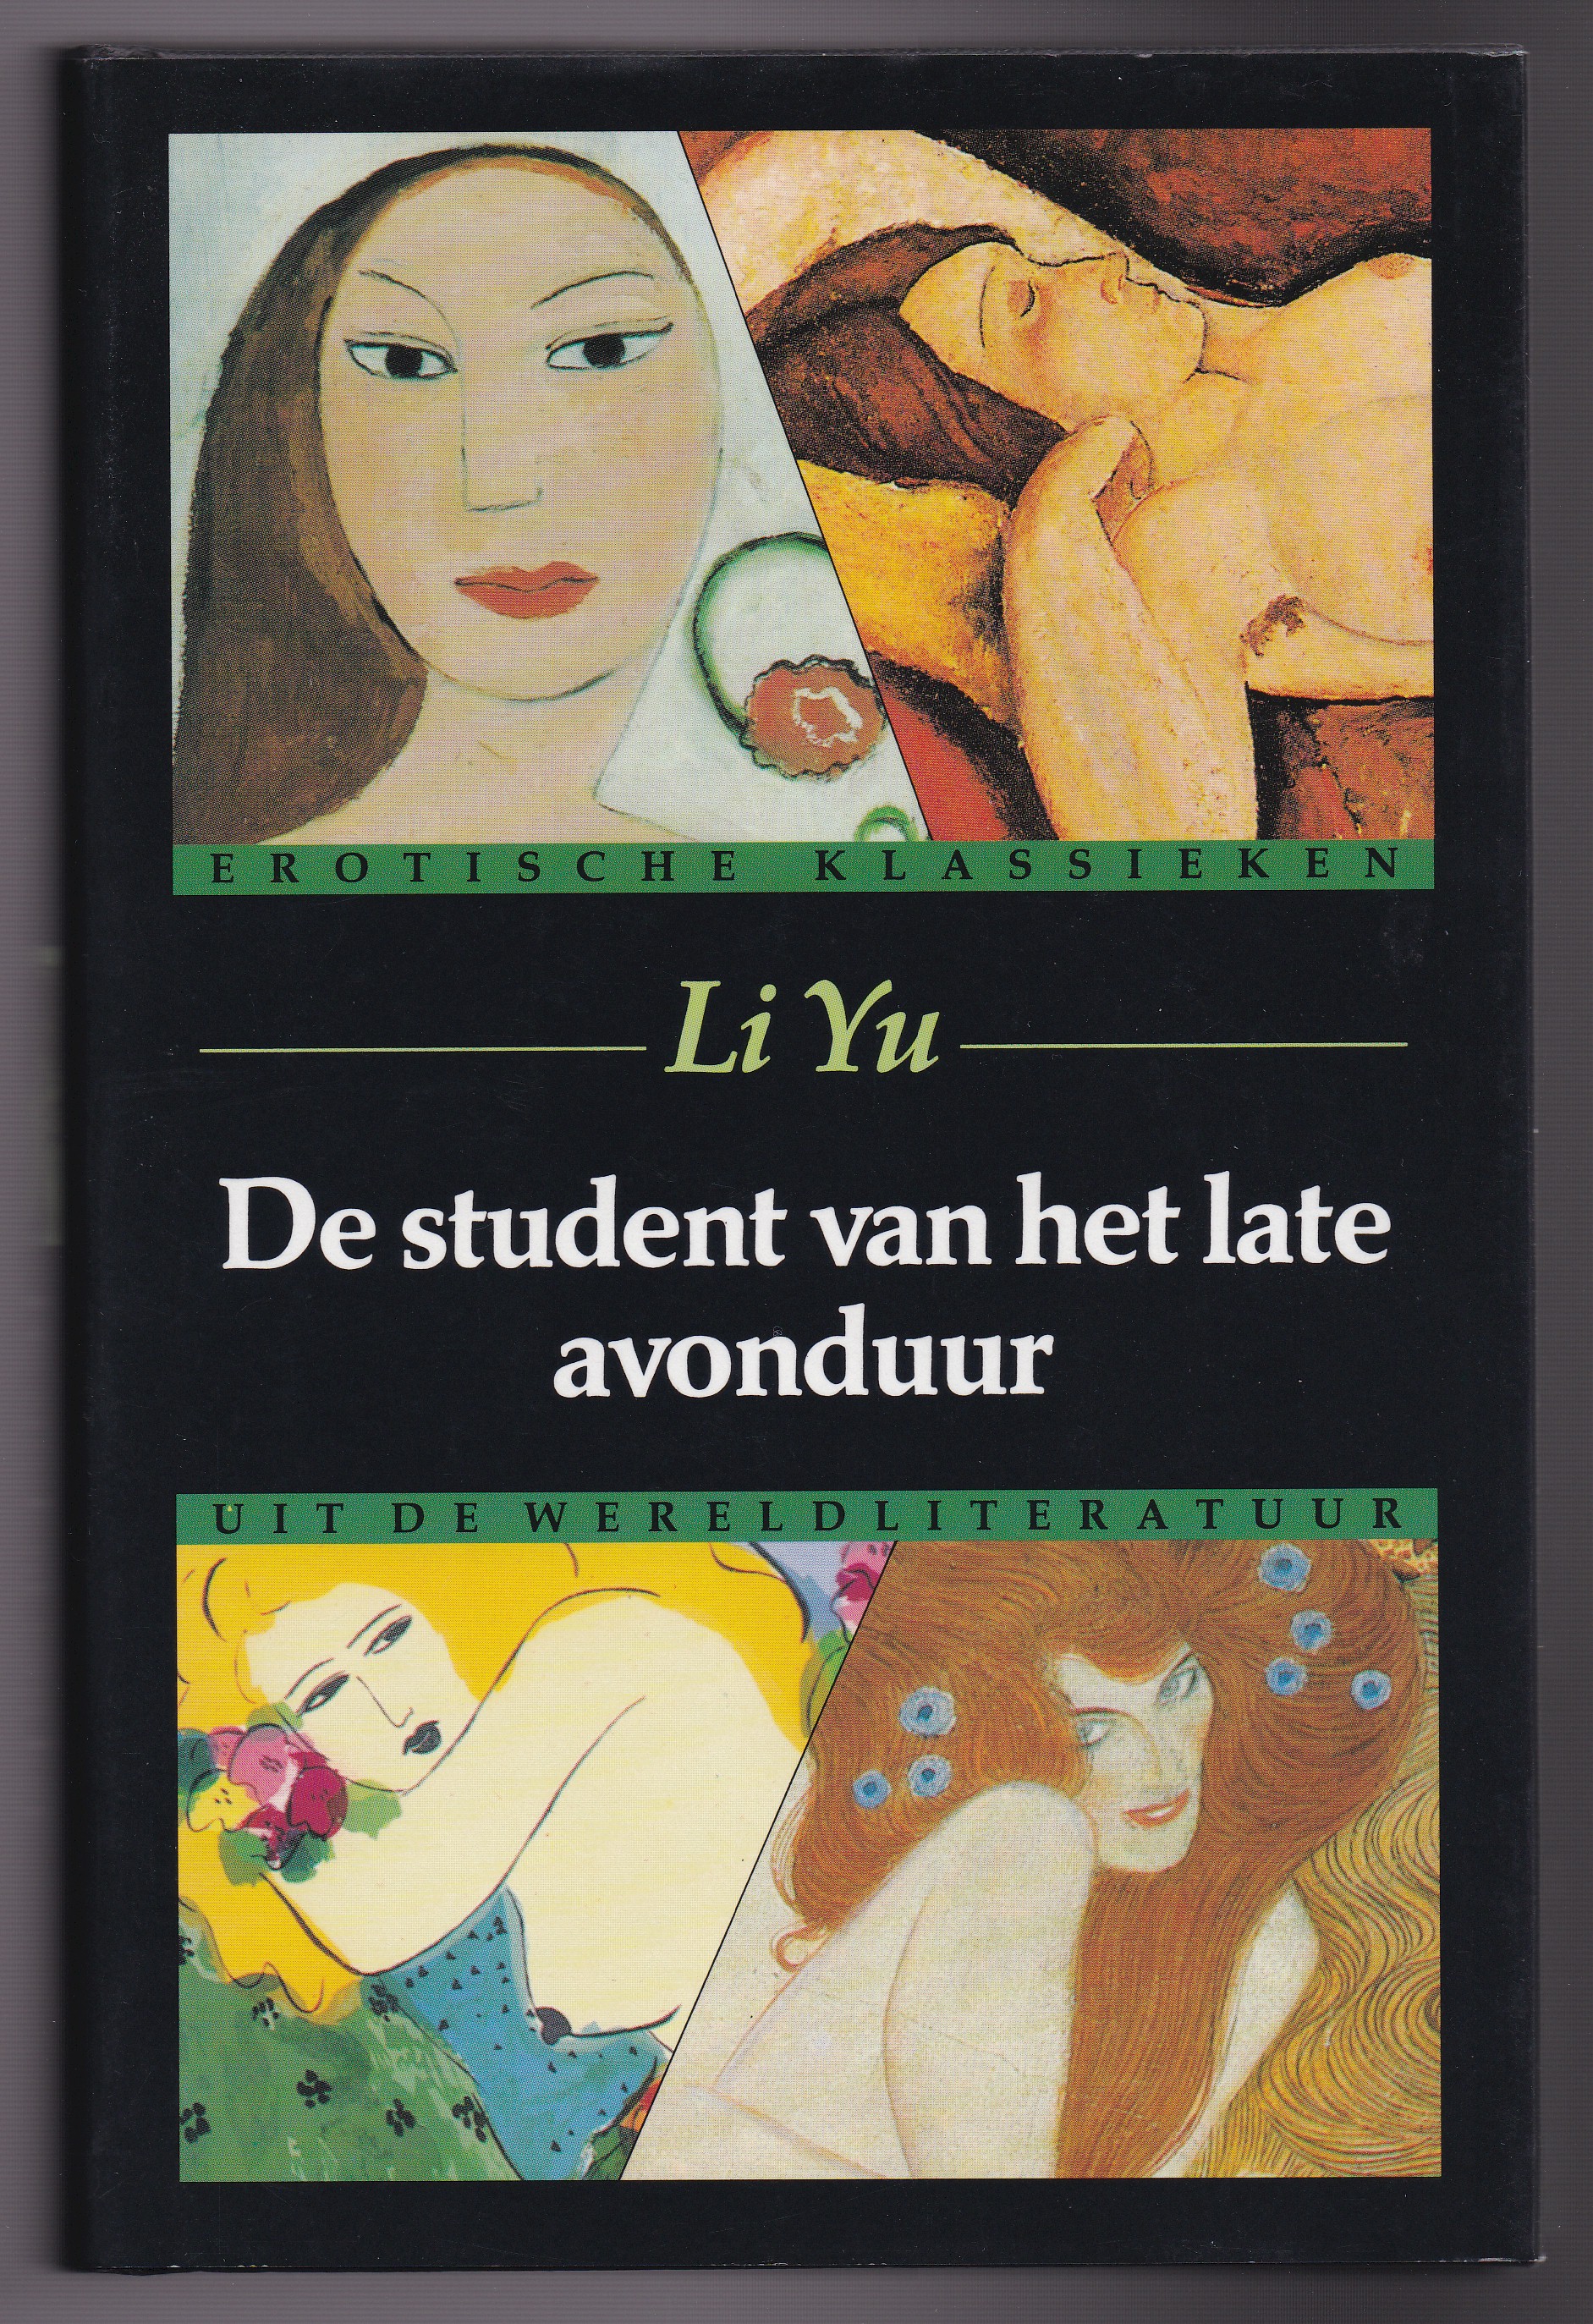 Yu, Li - De student van het late avonduur. Erotische klassieken uit de wereldlitaratuur. Vertaling Peter de Jong